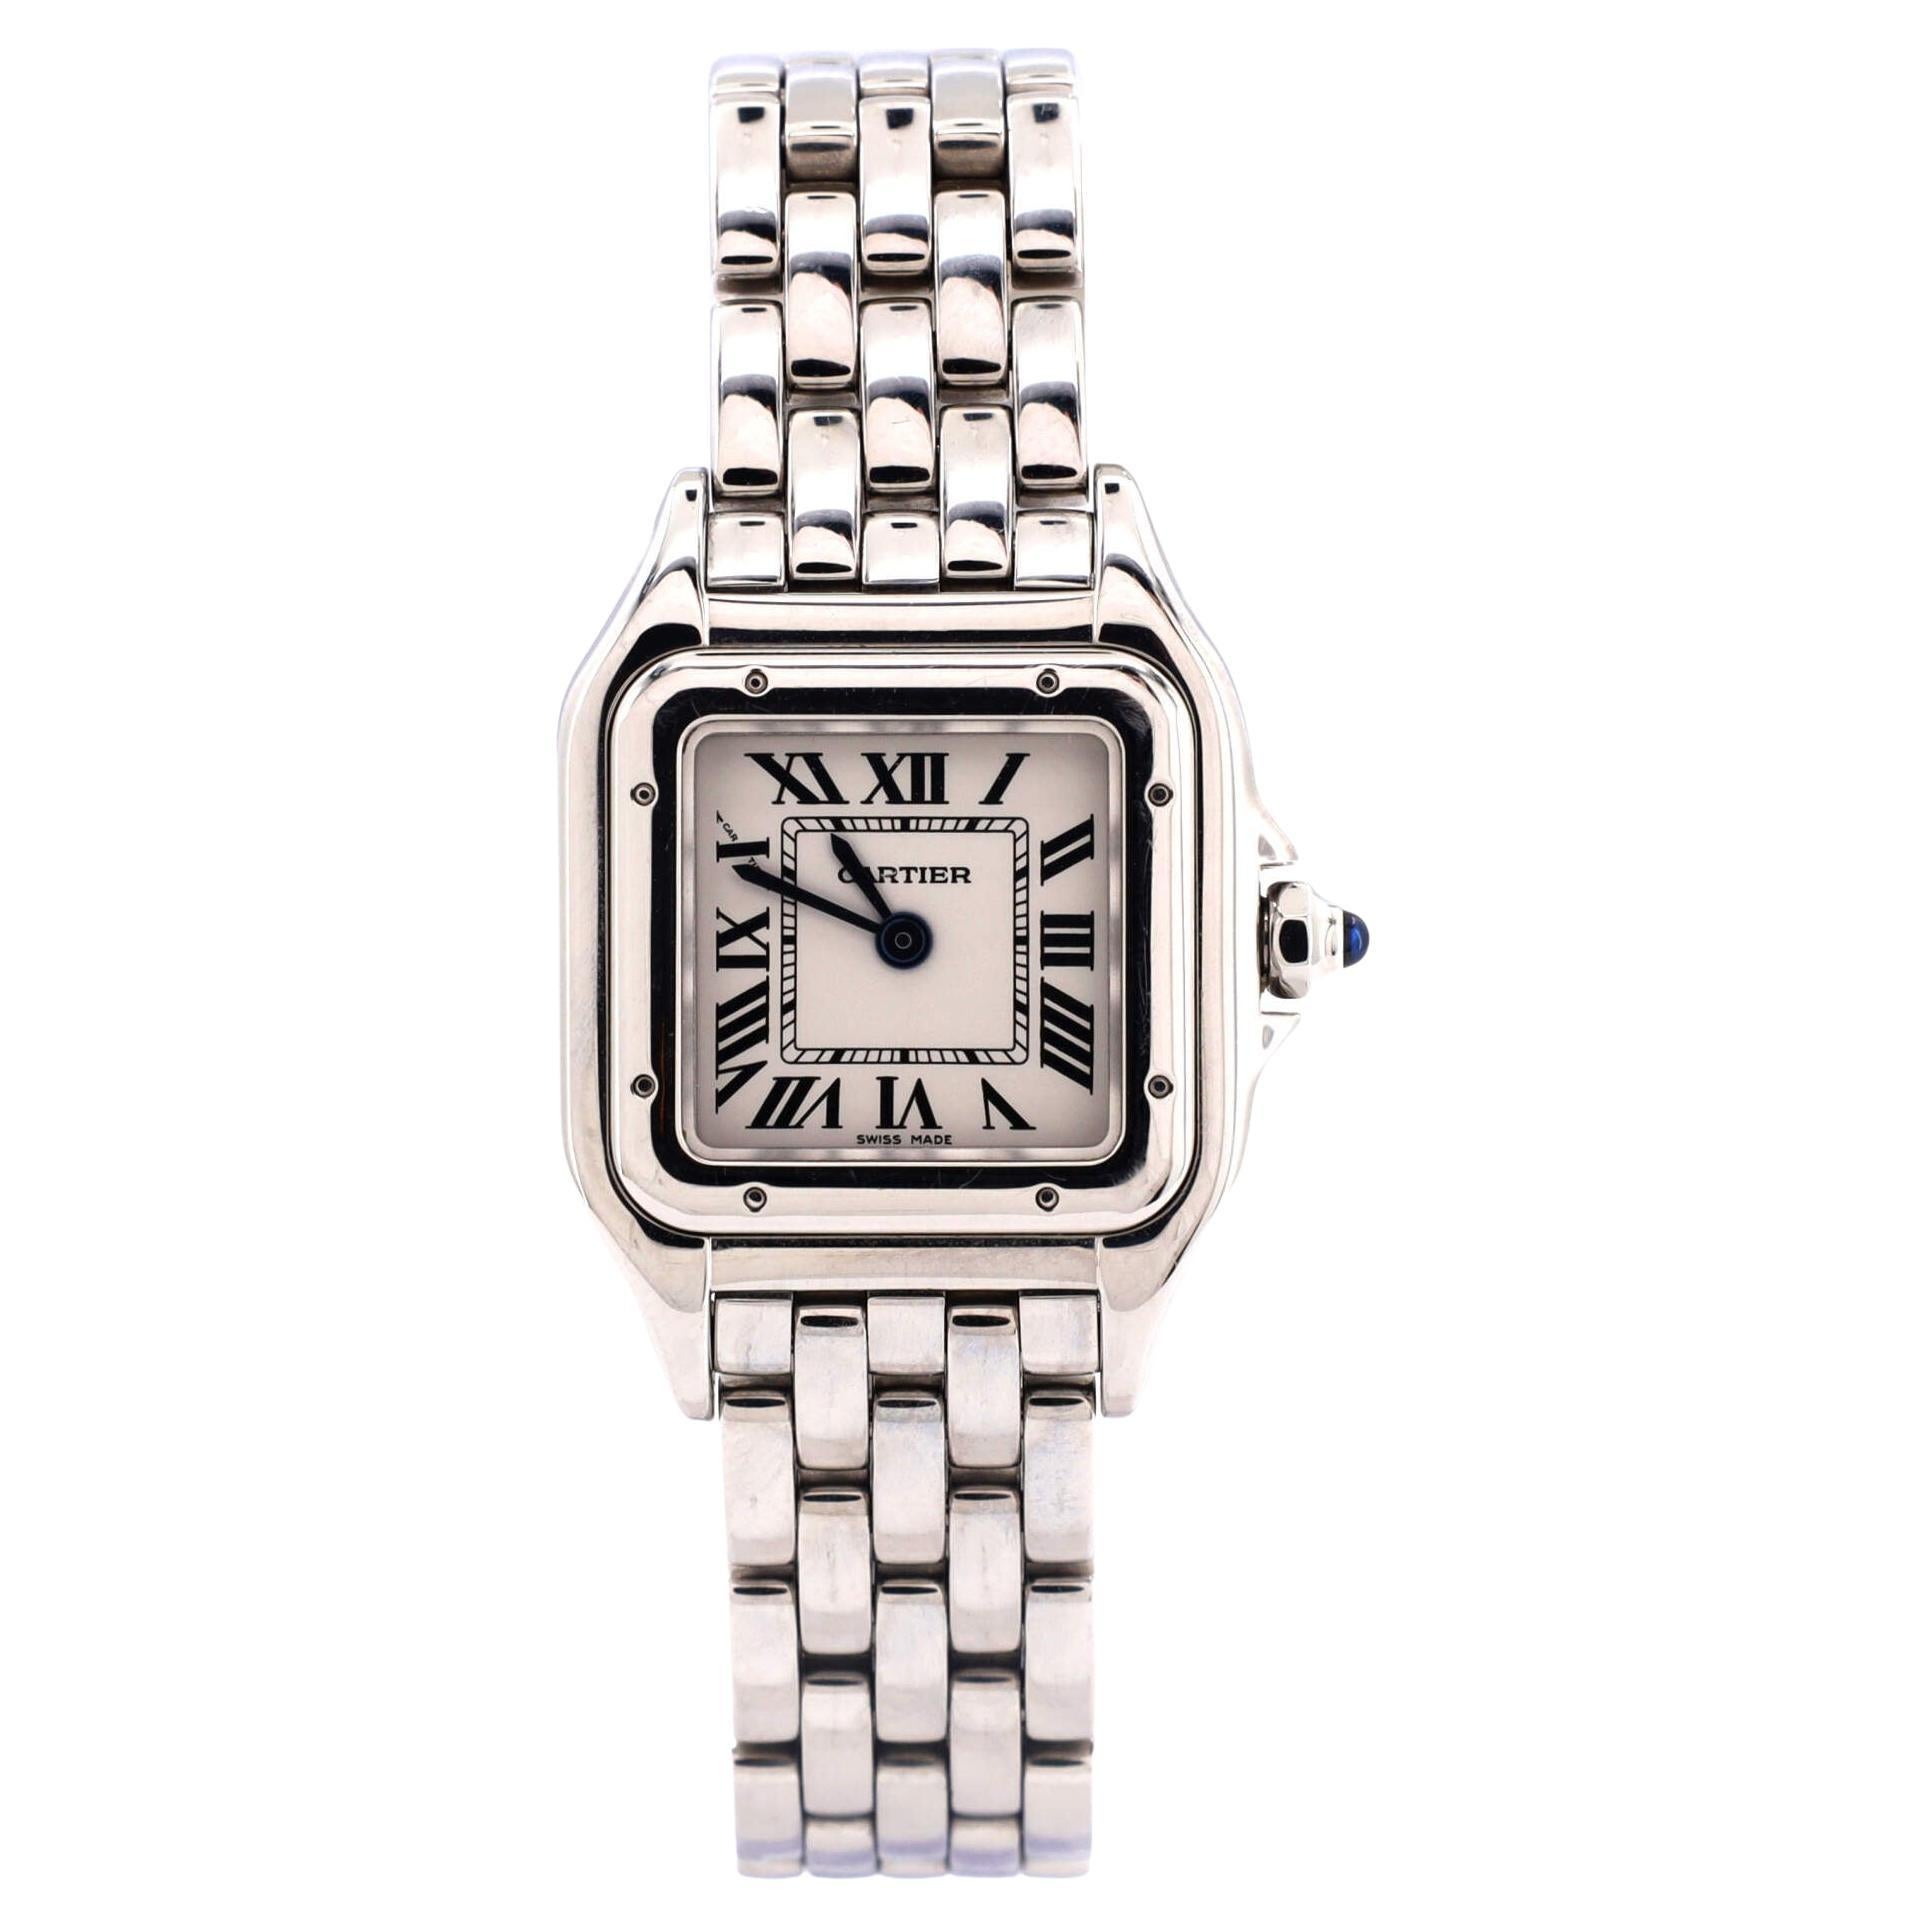 Cartier Panthere De Cartier Quartz Watch Stainless Steel